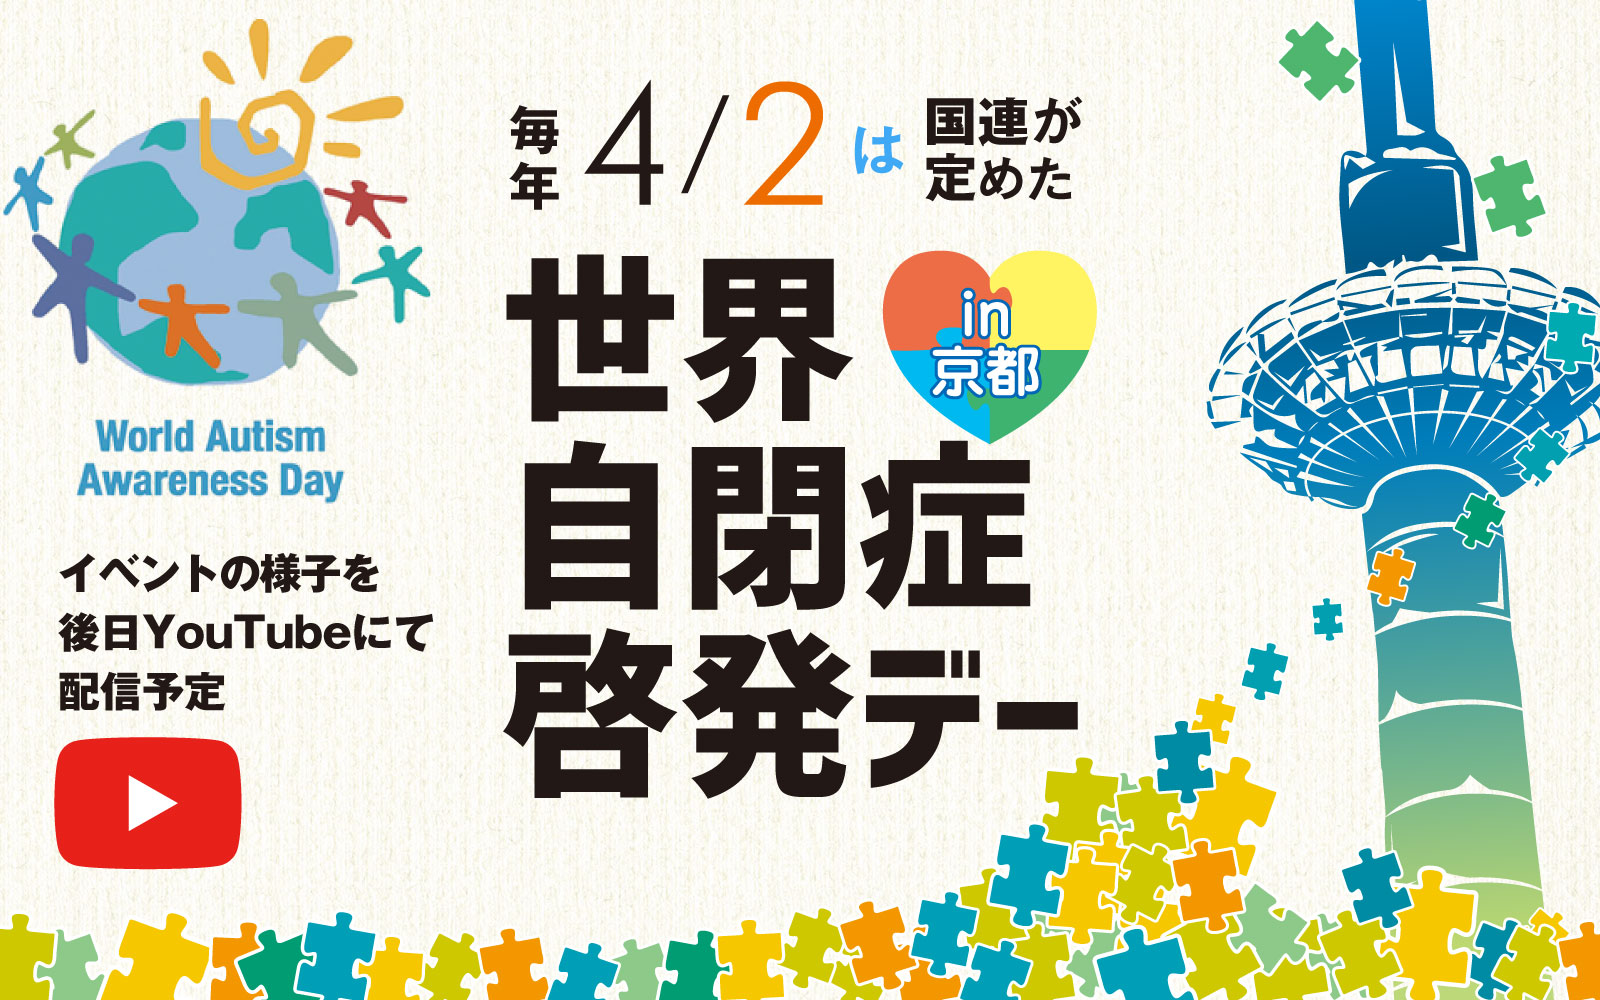 世界自閉症セミナー in 京都